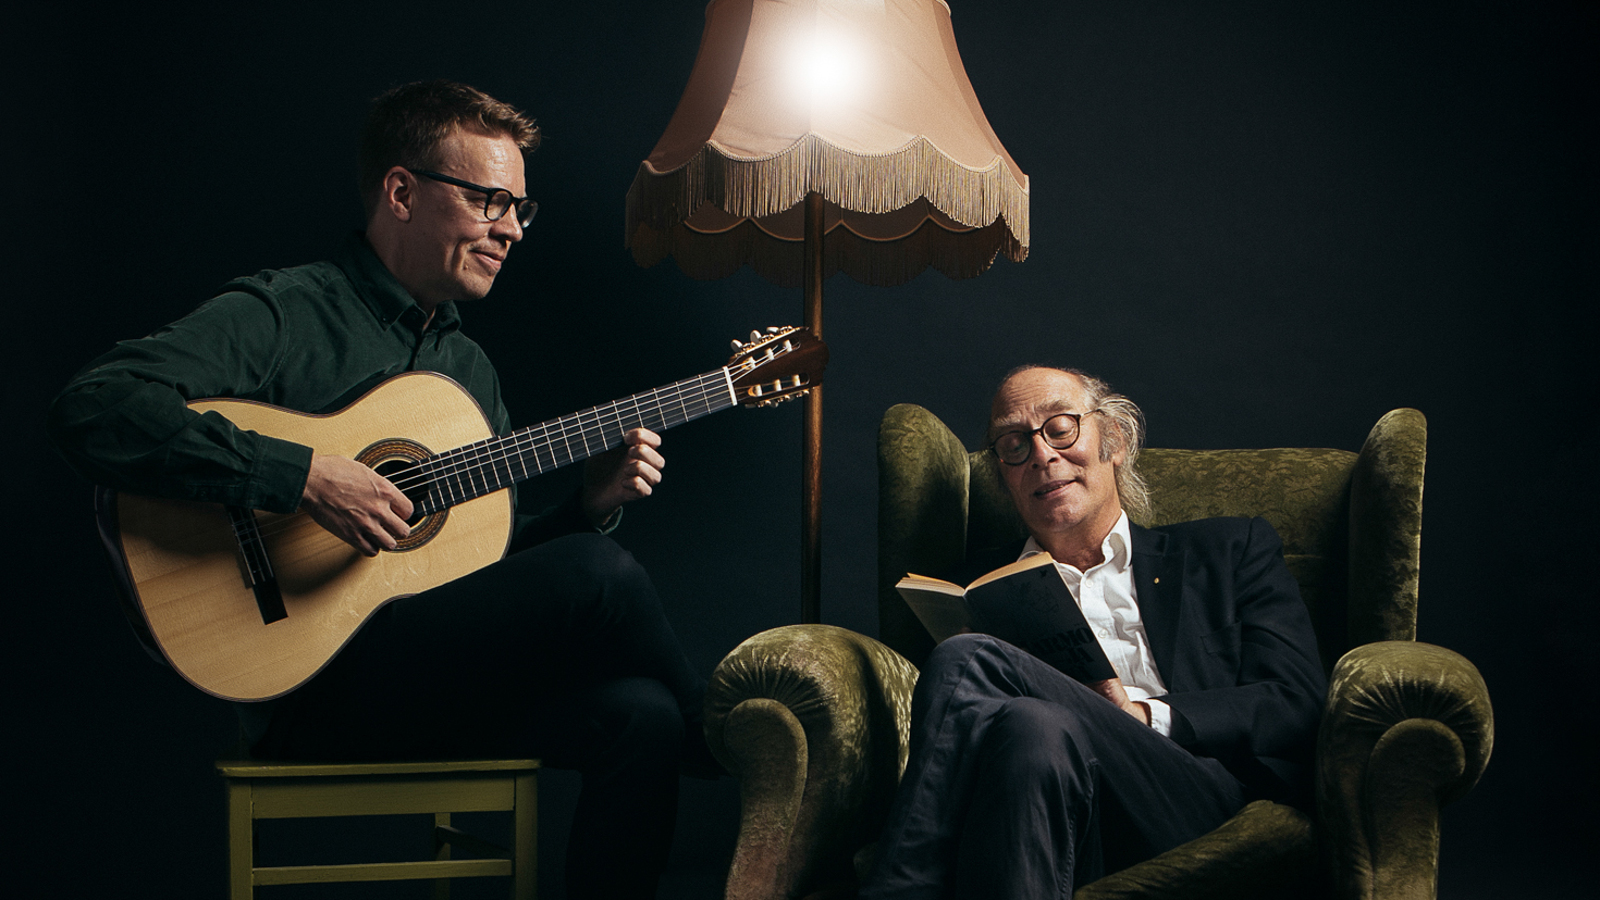 Kuvassa on vasemmalla Petri Kumela soittamassa kitaraa ja oikealla Vesa Vierikko istumassa isossa nojatuolissa. Taustalla on tummaa huonetta.